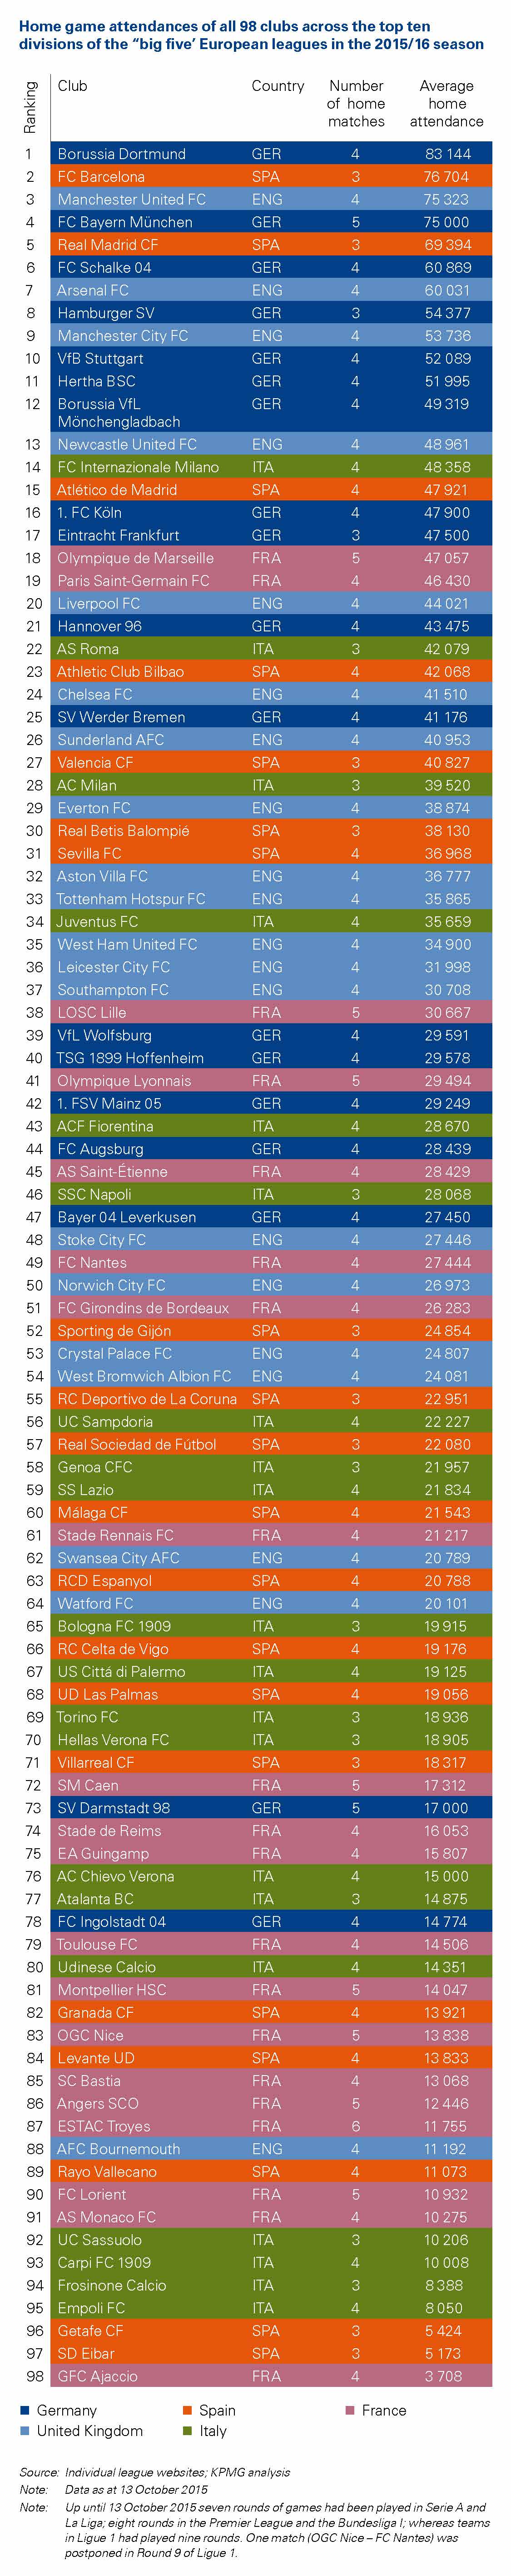 Euro club att ranking